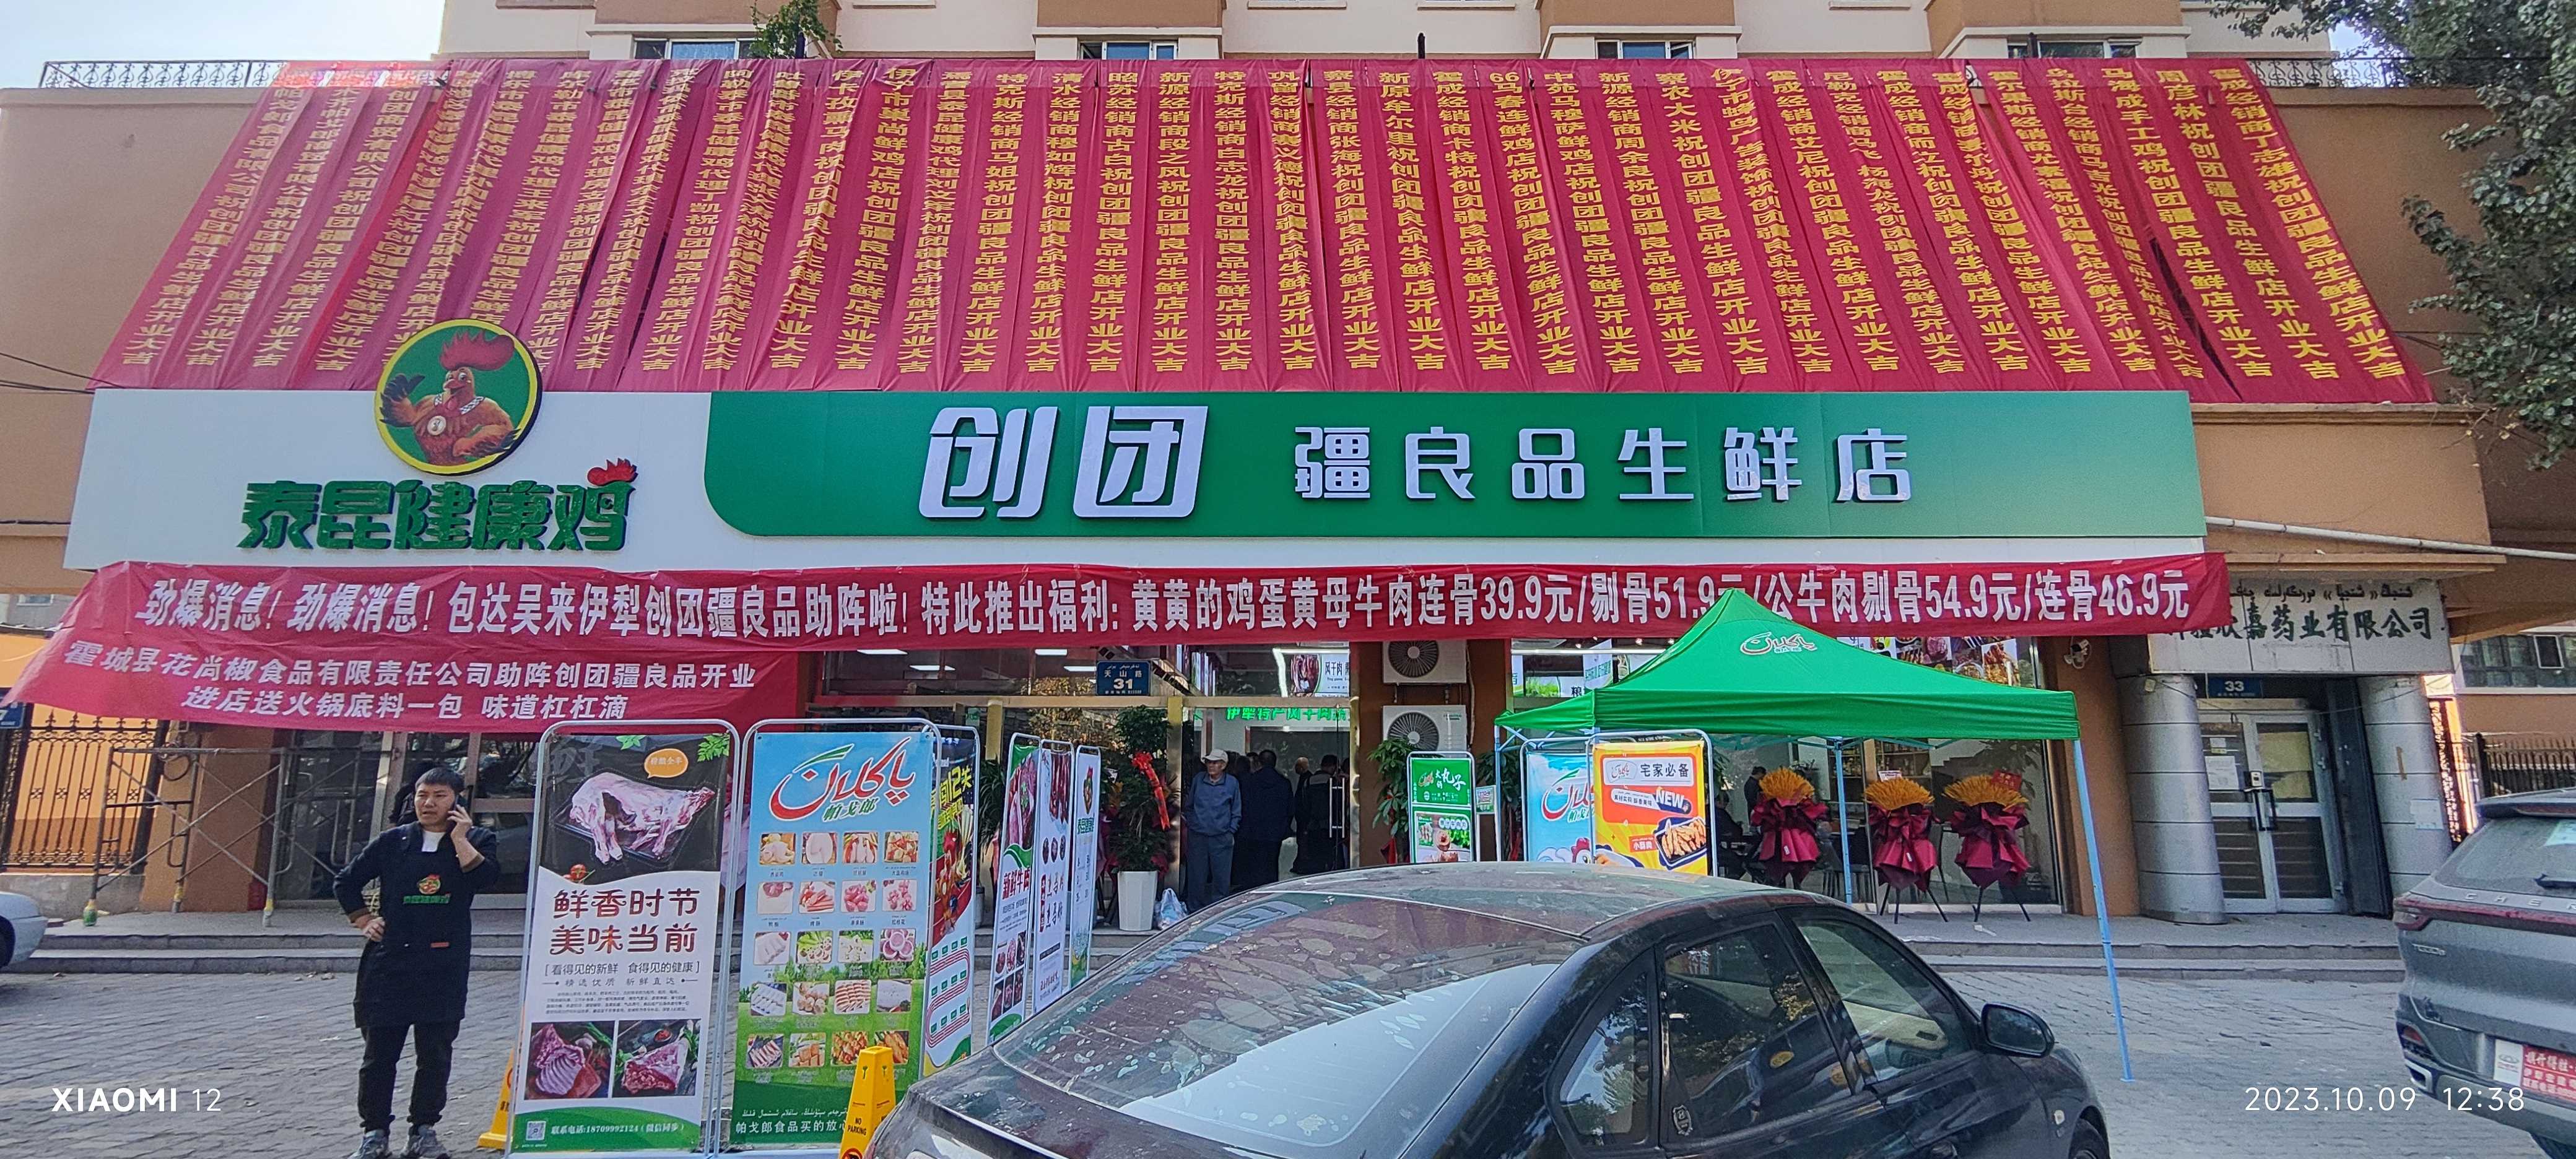 泰昆健康鸡旗舰店——创团·疆良品生鲜店